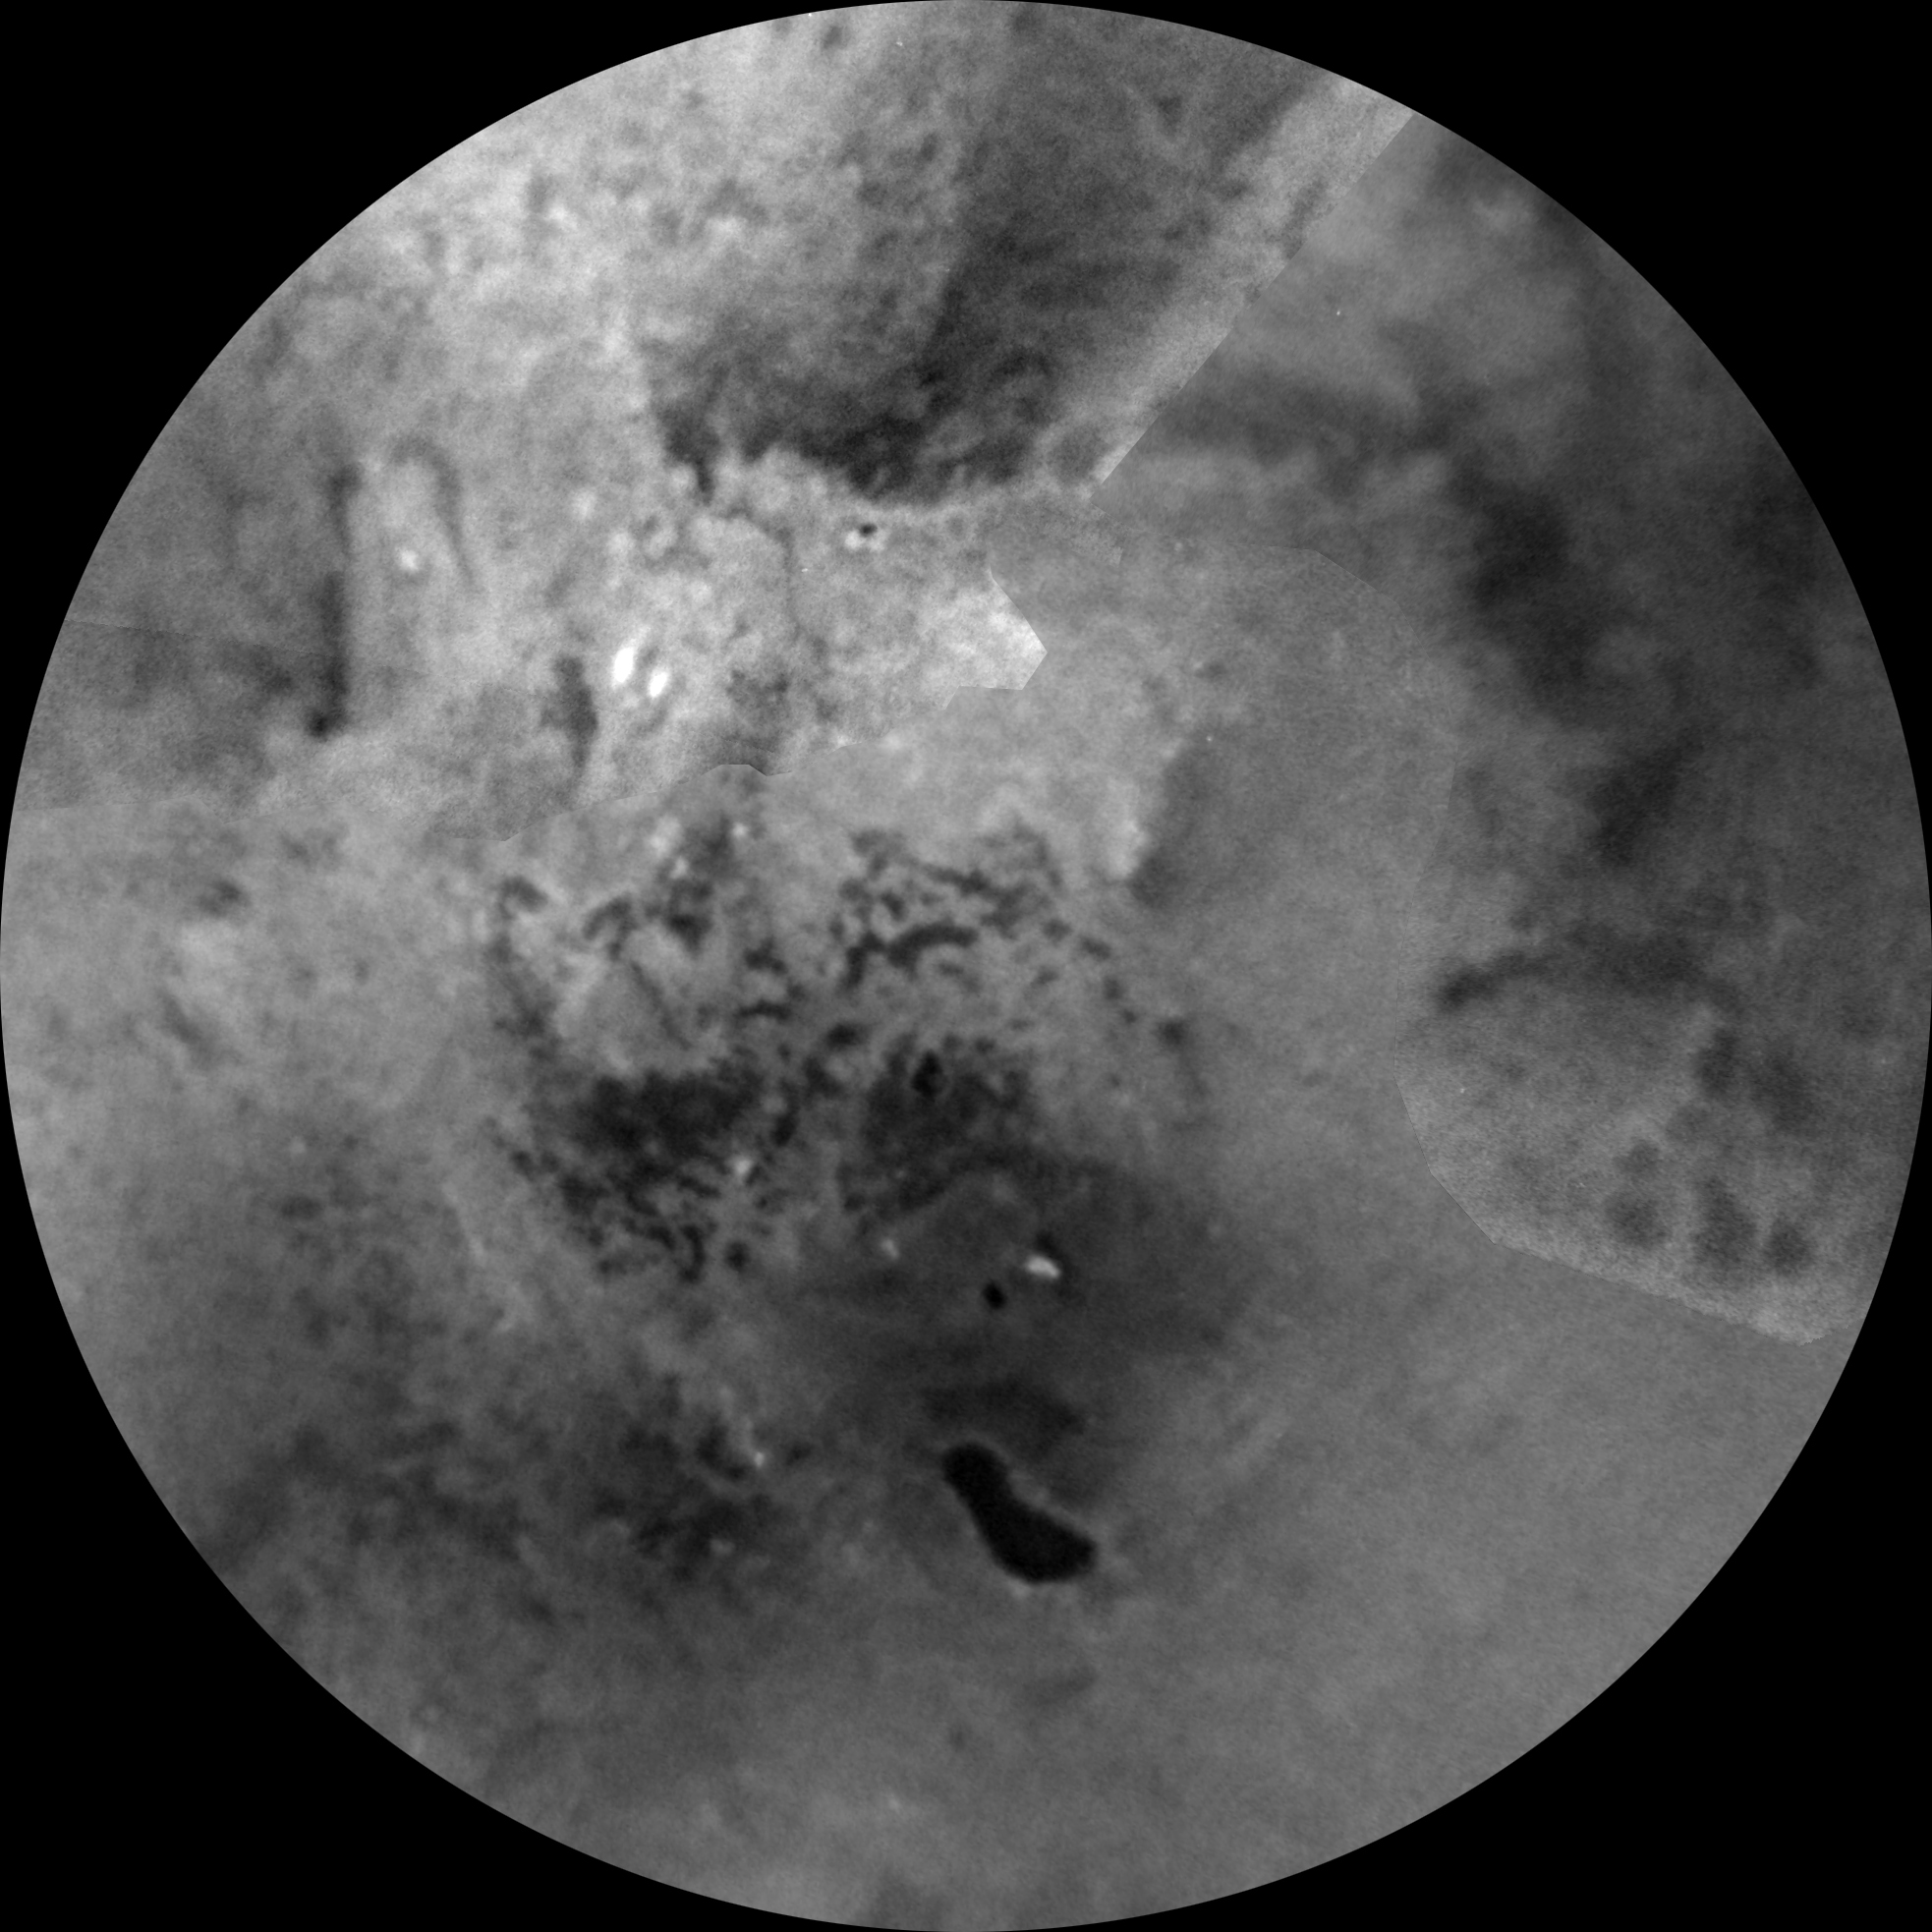 Images assemblées du pôle sud de Titan, prises le 7 avril 2014 lors du centième survol de Cassini, avec un filtre centré à 938 nm permettant d’étudier les variations d’albédo. Les taches sombres sont des lacs de méthane liquide. Ils sont moins nombreux qu’au pôle nord. © Nasa, JPL-Caltech, Space Science Institute